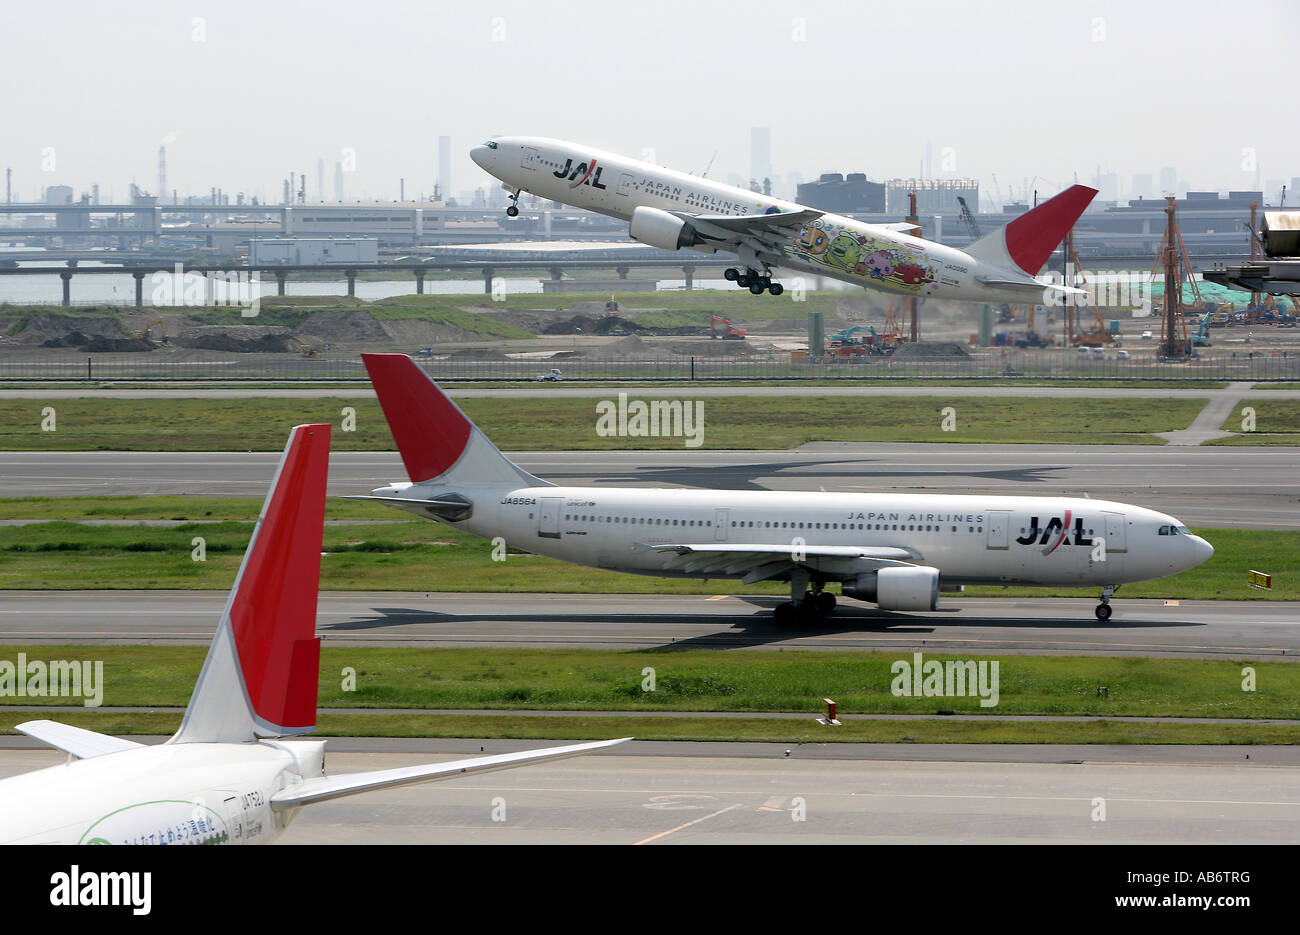 JPN, Japan, Tokyo: Haneda Airport. Planes of JAL, Japan Airlines, Terminal 1 Stock Photo